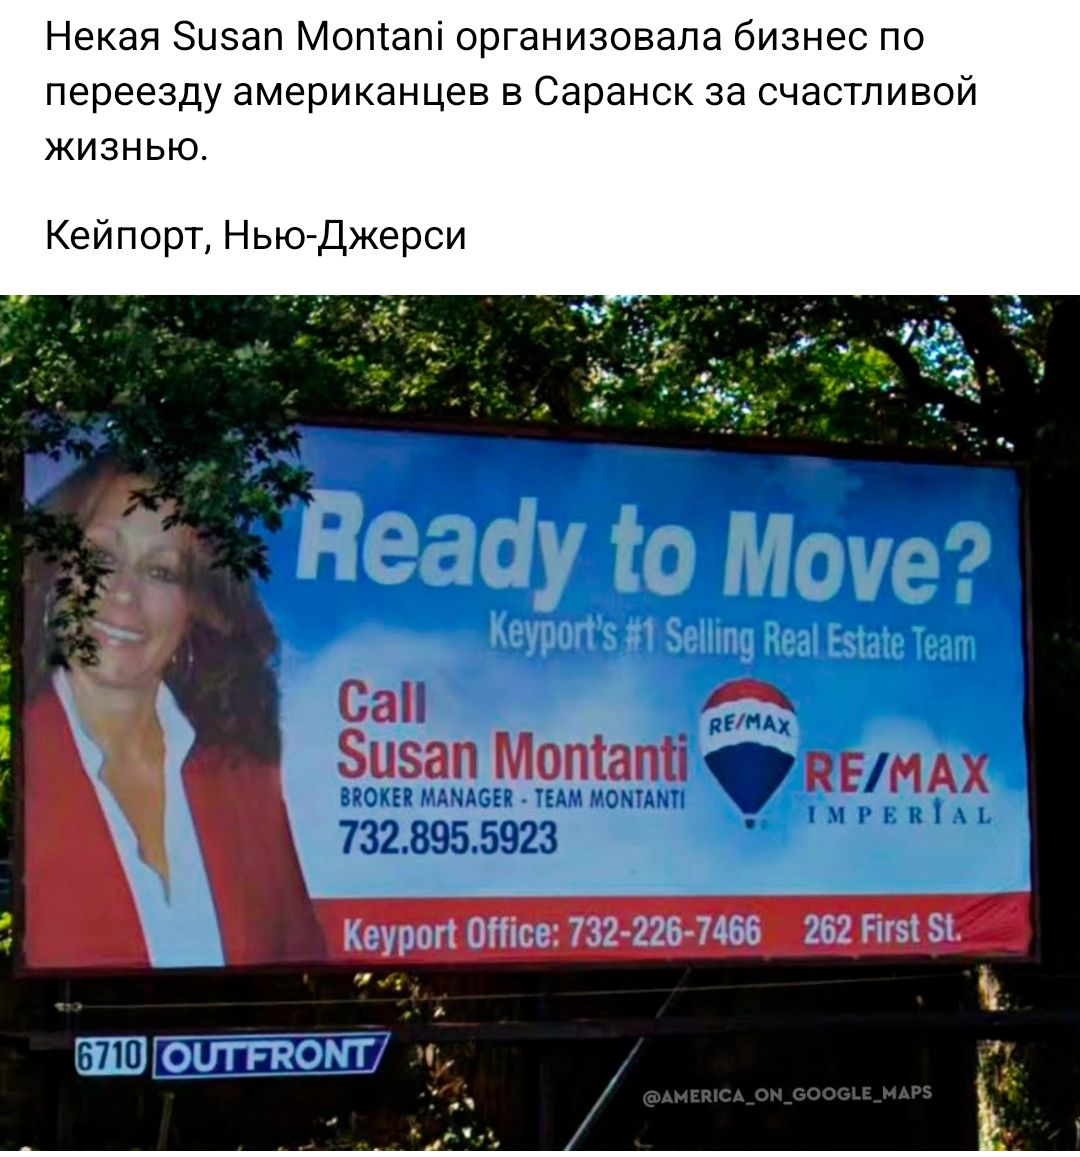 Некая Зцэап Мата организовала бизнес по переезду американцев в Саранск за счастливой жизнью Кейпорт нтджерси